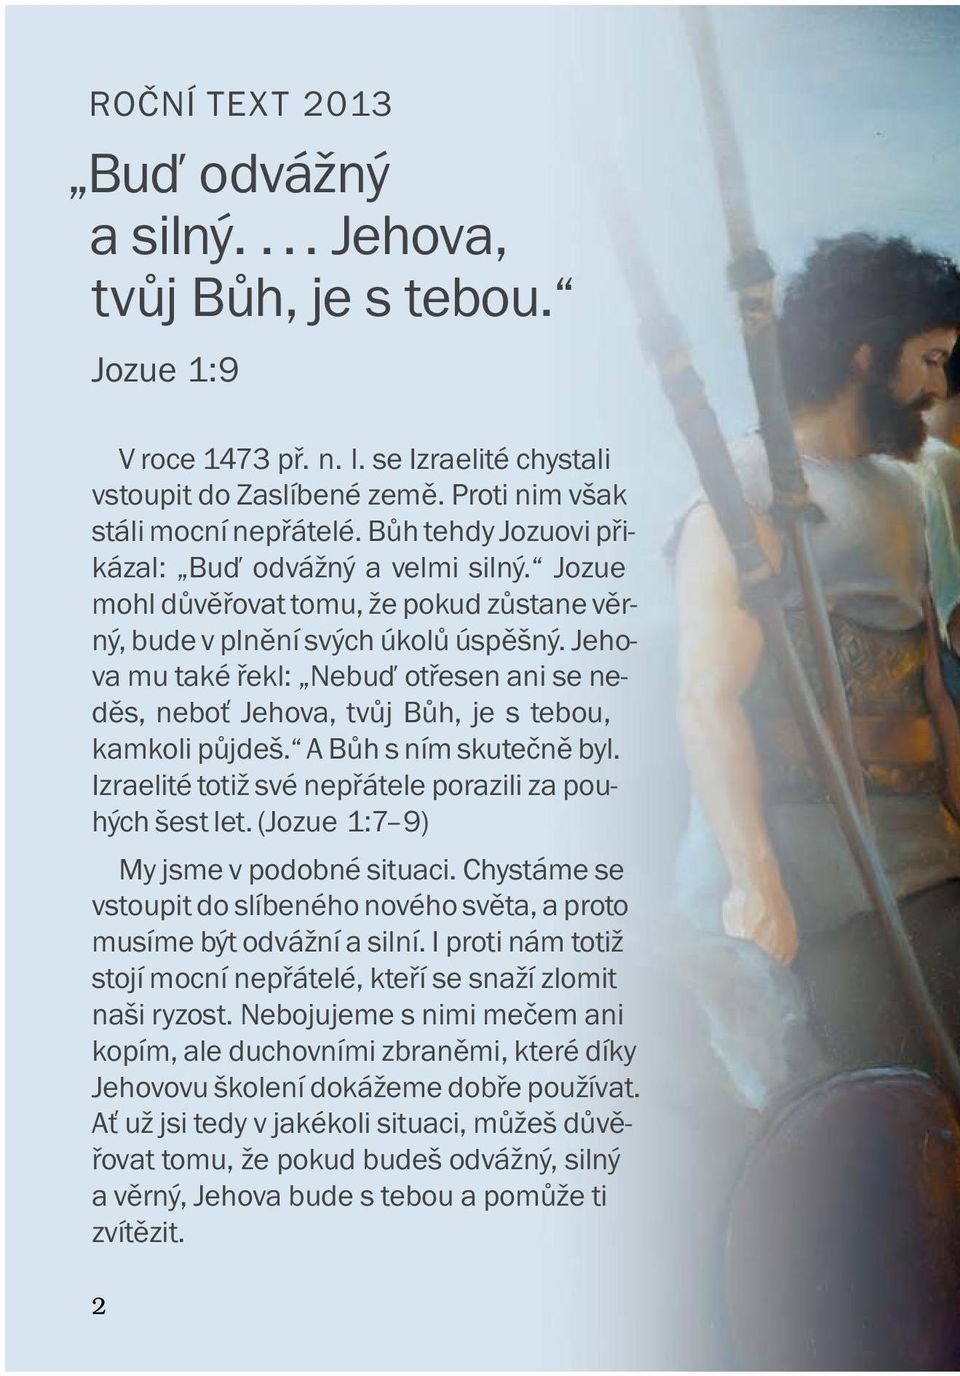 Jehovahovi svědkové seznamovací stránky Austrálie